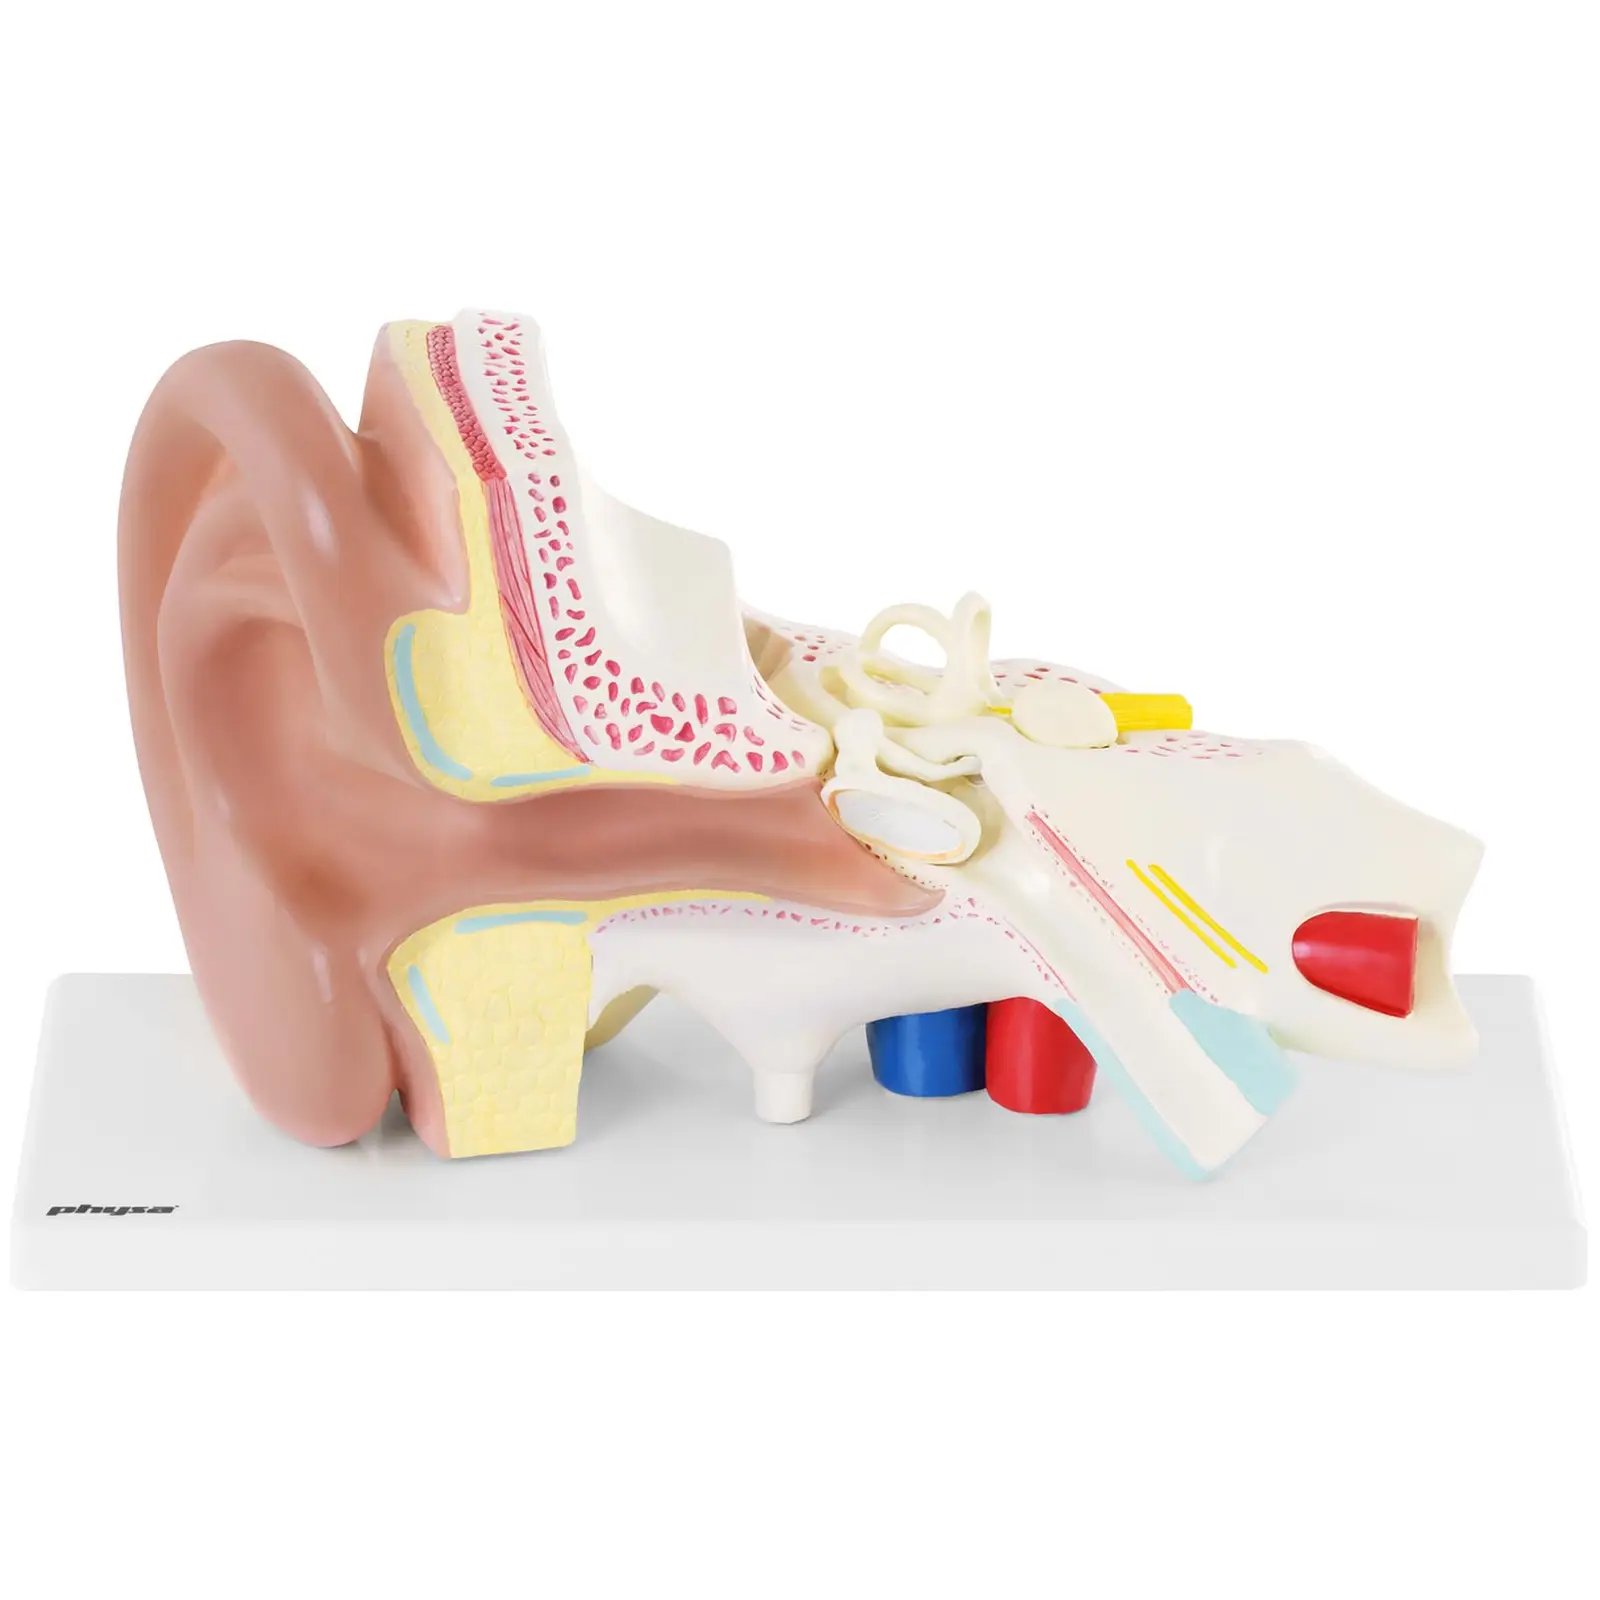 Ouvido - modelo anatómico - escala 3:1